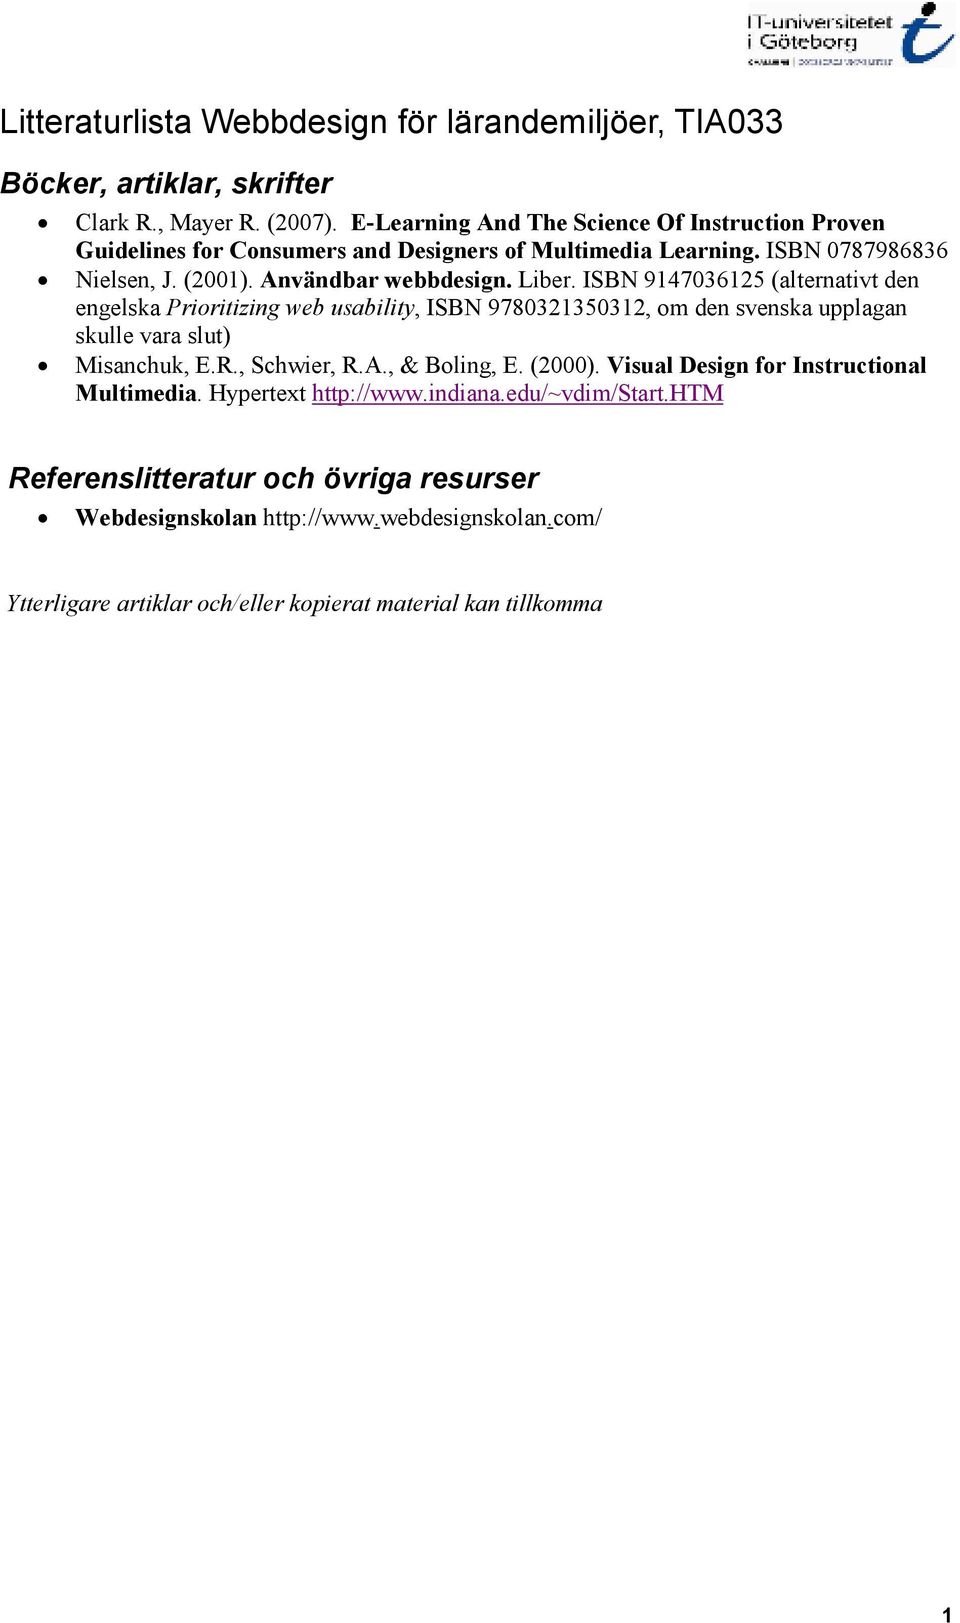 ISBN 9147036125 (alternativt den engelska Prioritizing web usability, ISBN 9780321350312, om den svenska upplagan skulle vara slut) Misanchuk, E.R., Schwier, R.A., & Boling, E.